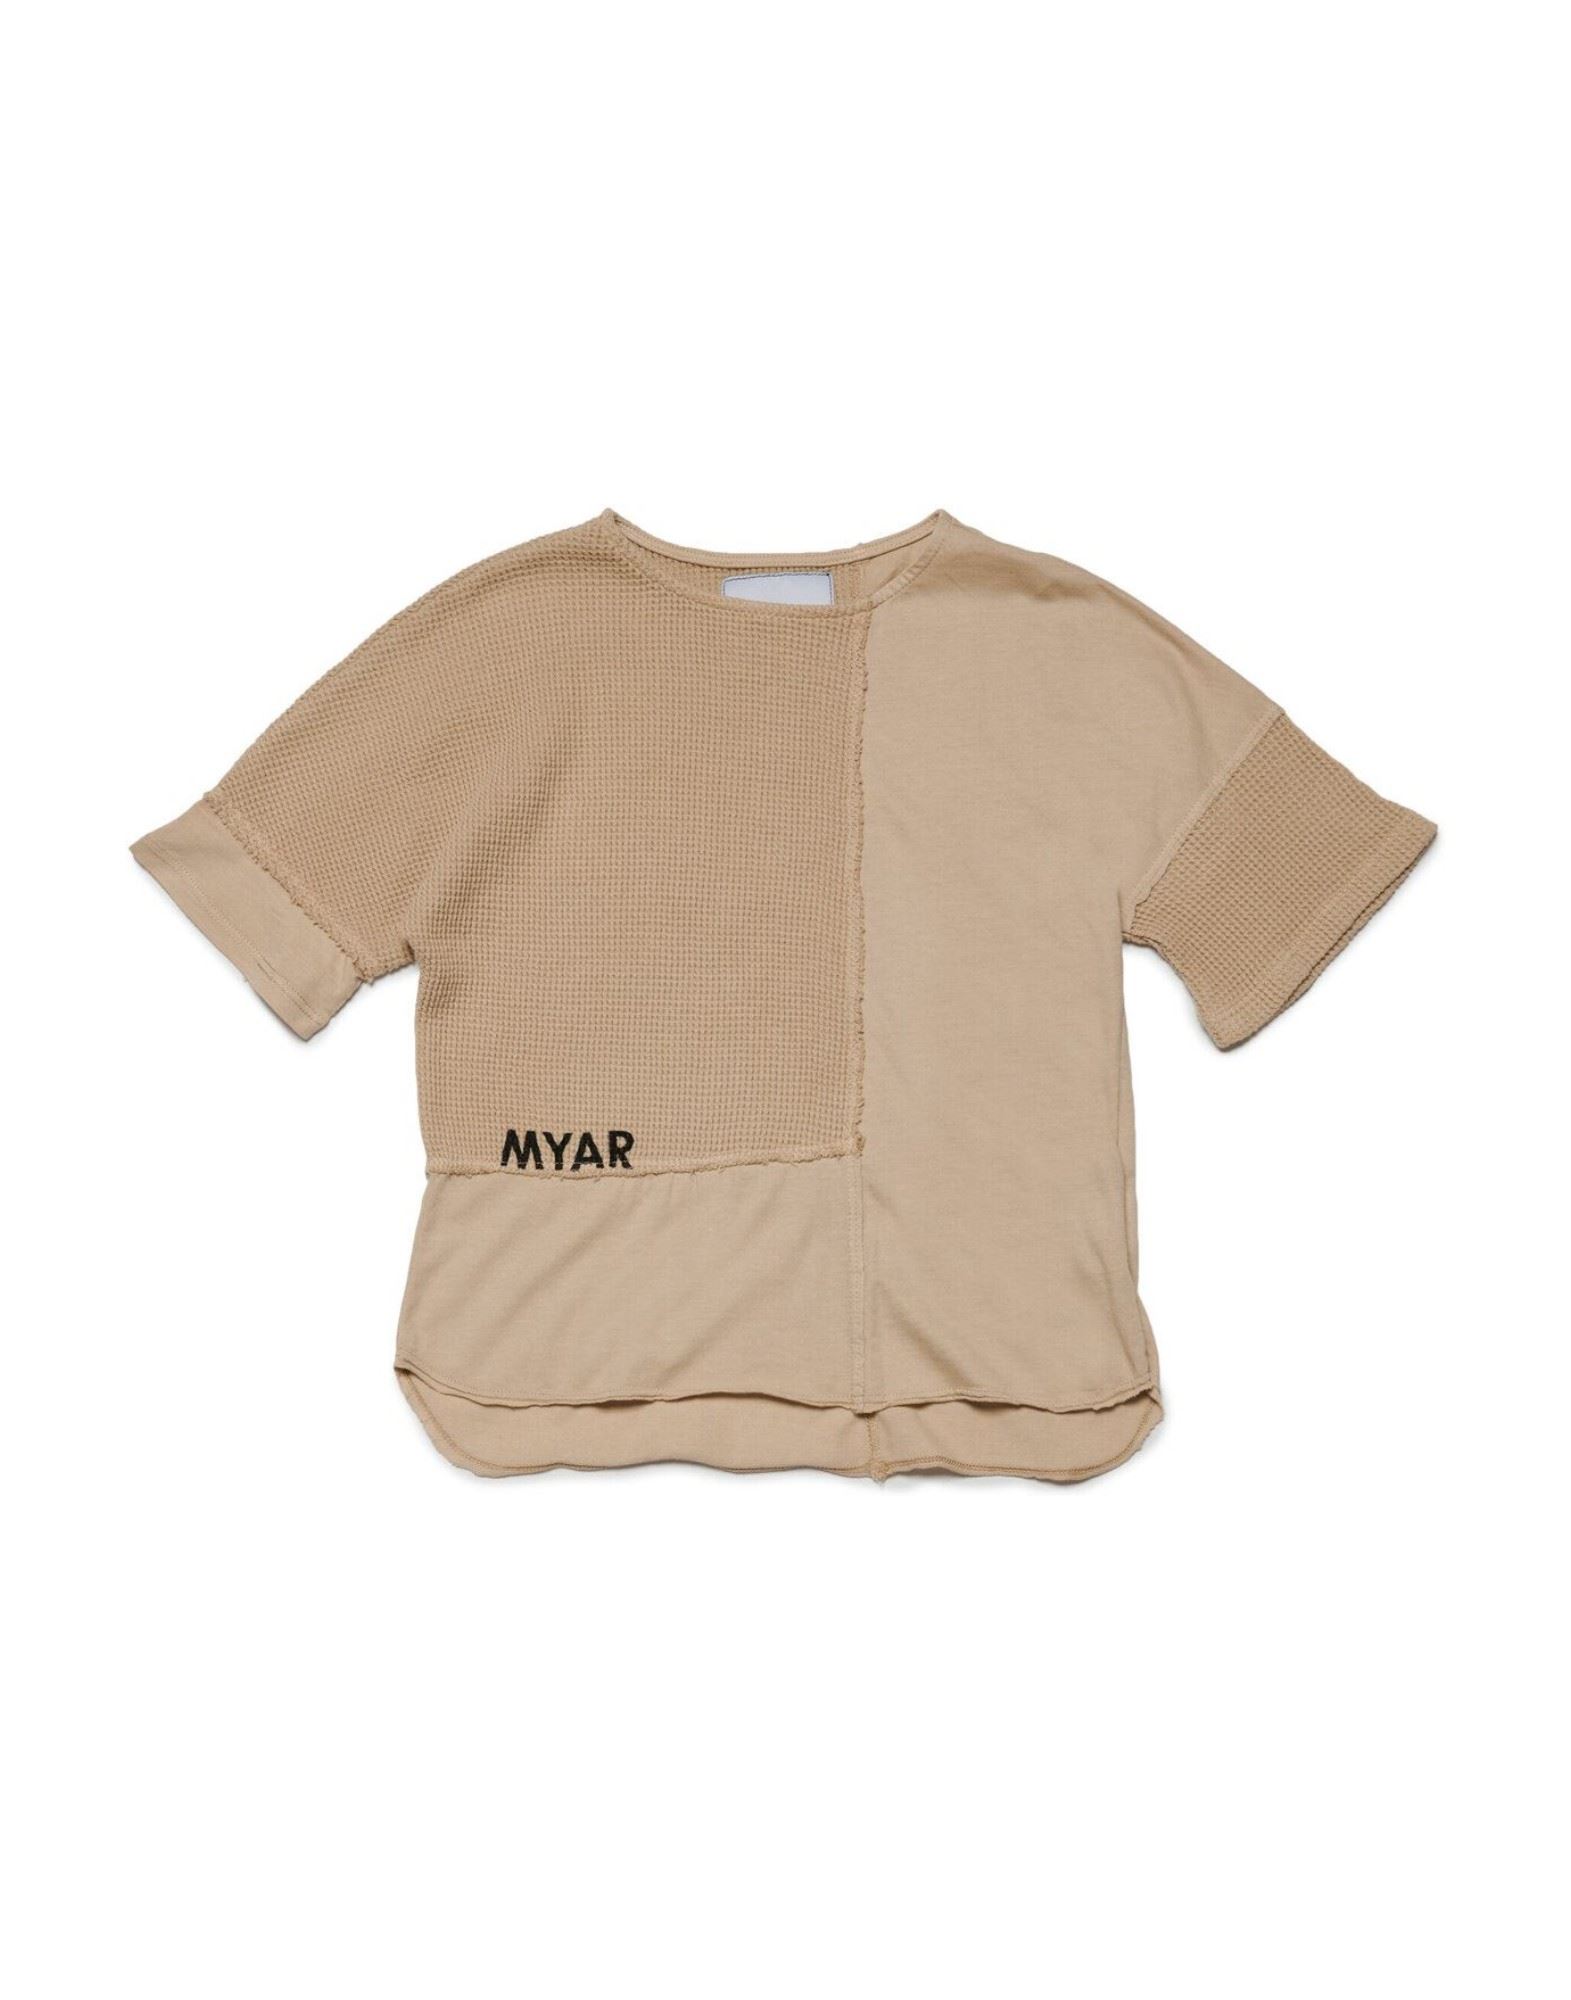 MYAR T-shirts Kinder Sand von MYAR